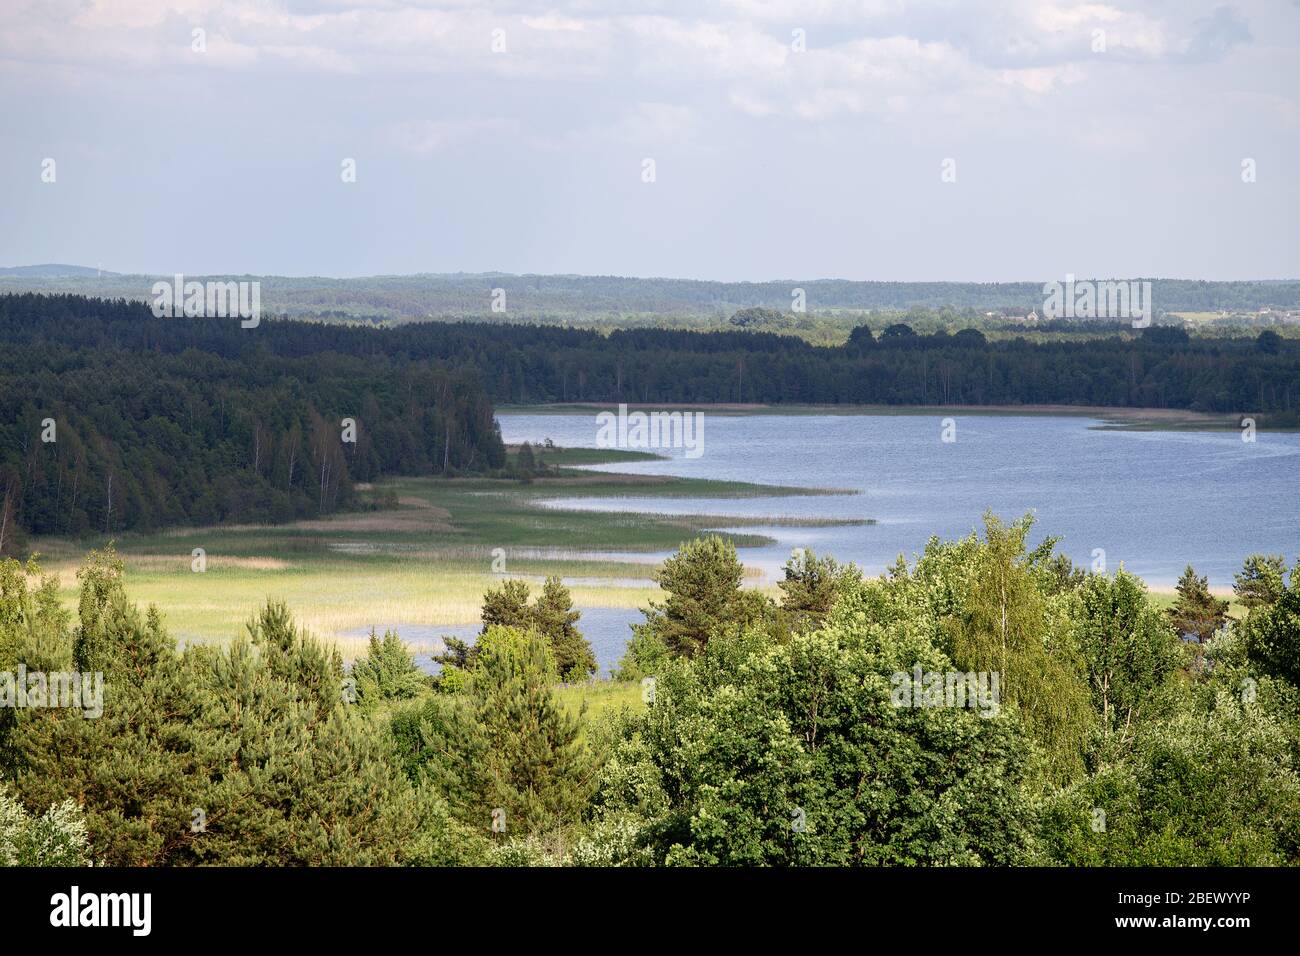 Déplacement destionation Biélorussie. Parc national des lacs Braslav. Les sites touristiques en Biélorussie Banque D'Images